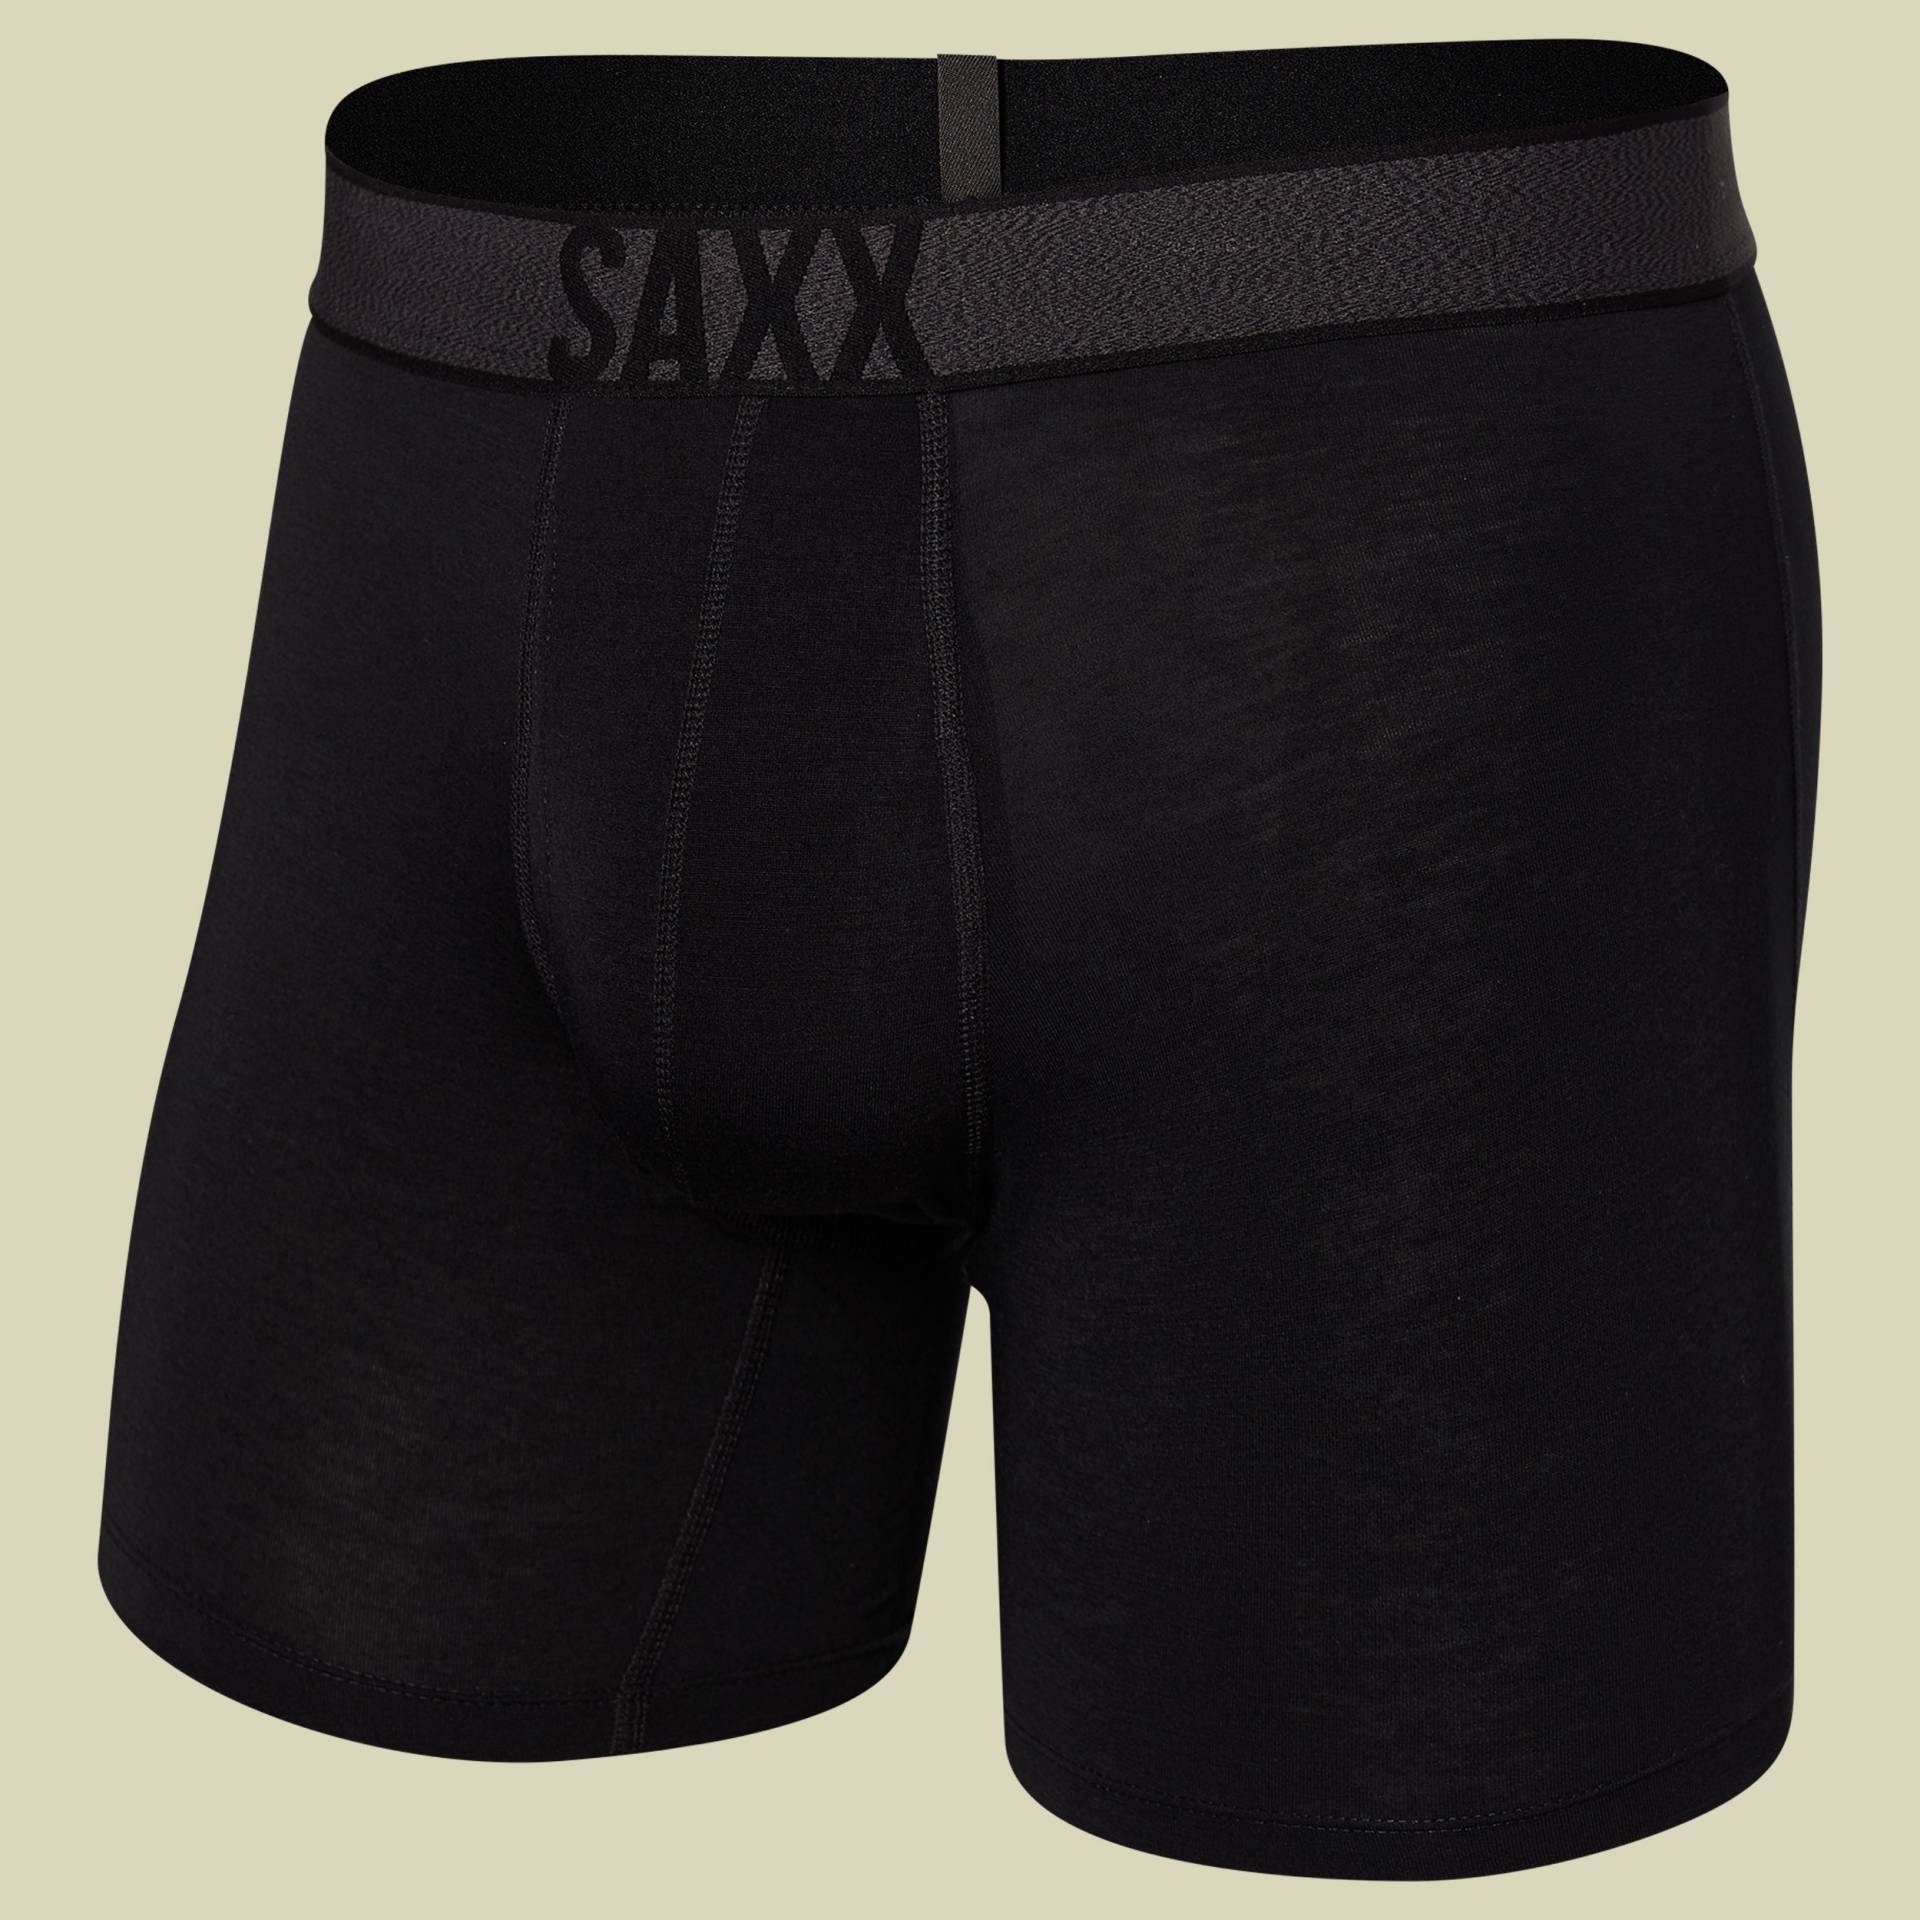 Roast Master Mid-Weight Boxer Brief Fly Men Größe XL Farbe black von Saxx